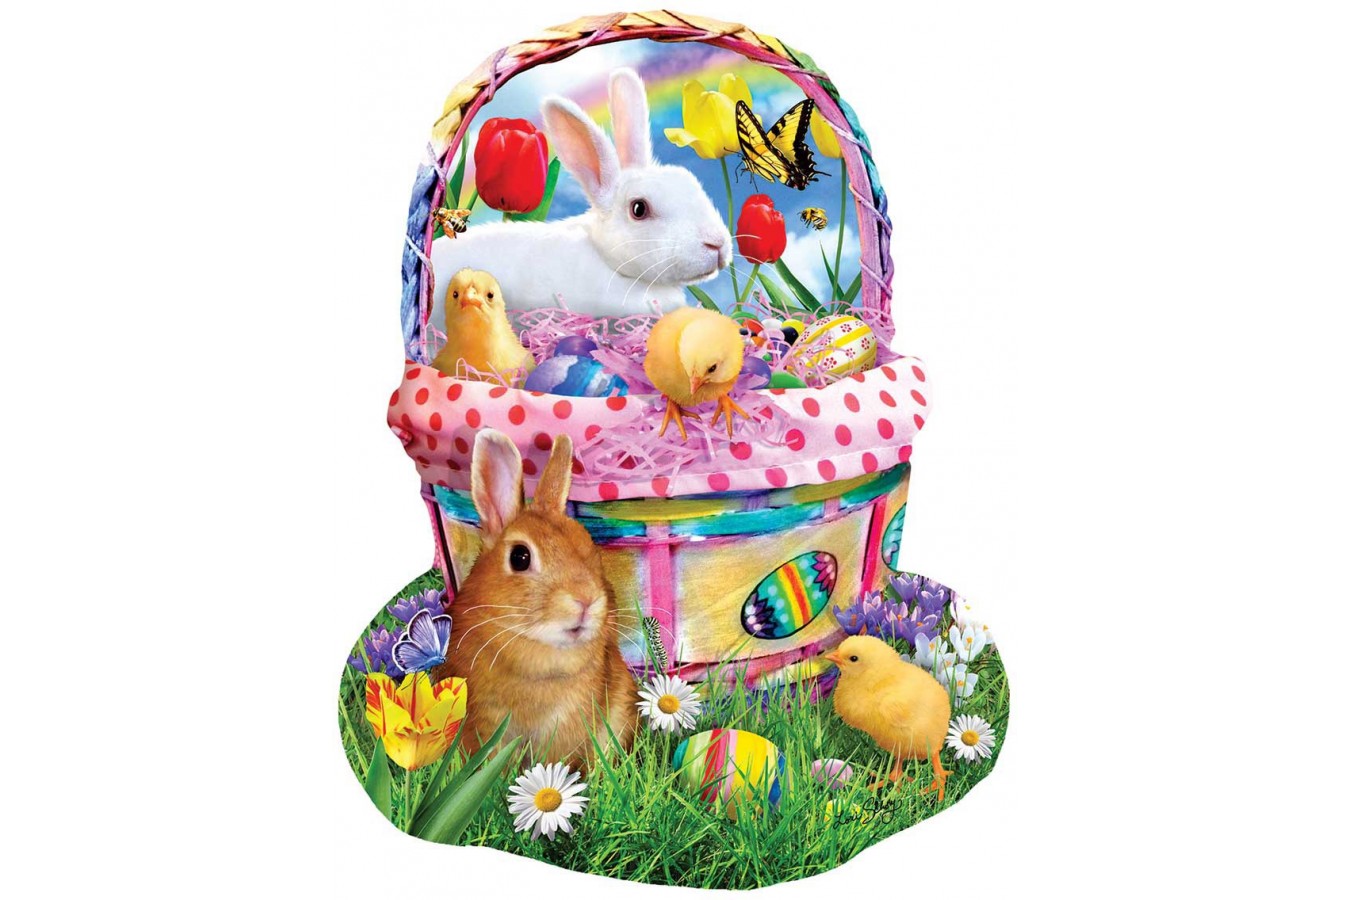 Puzzle contur SunsOut - Lori Schory: Bunny's Easter Basket, 1000 piese (Sunsout-97124)